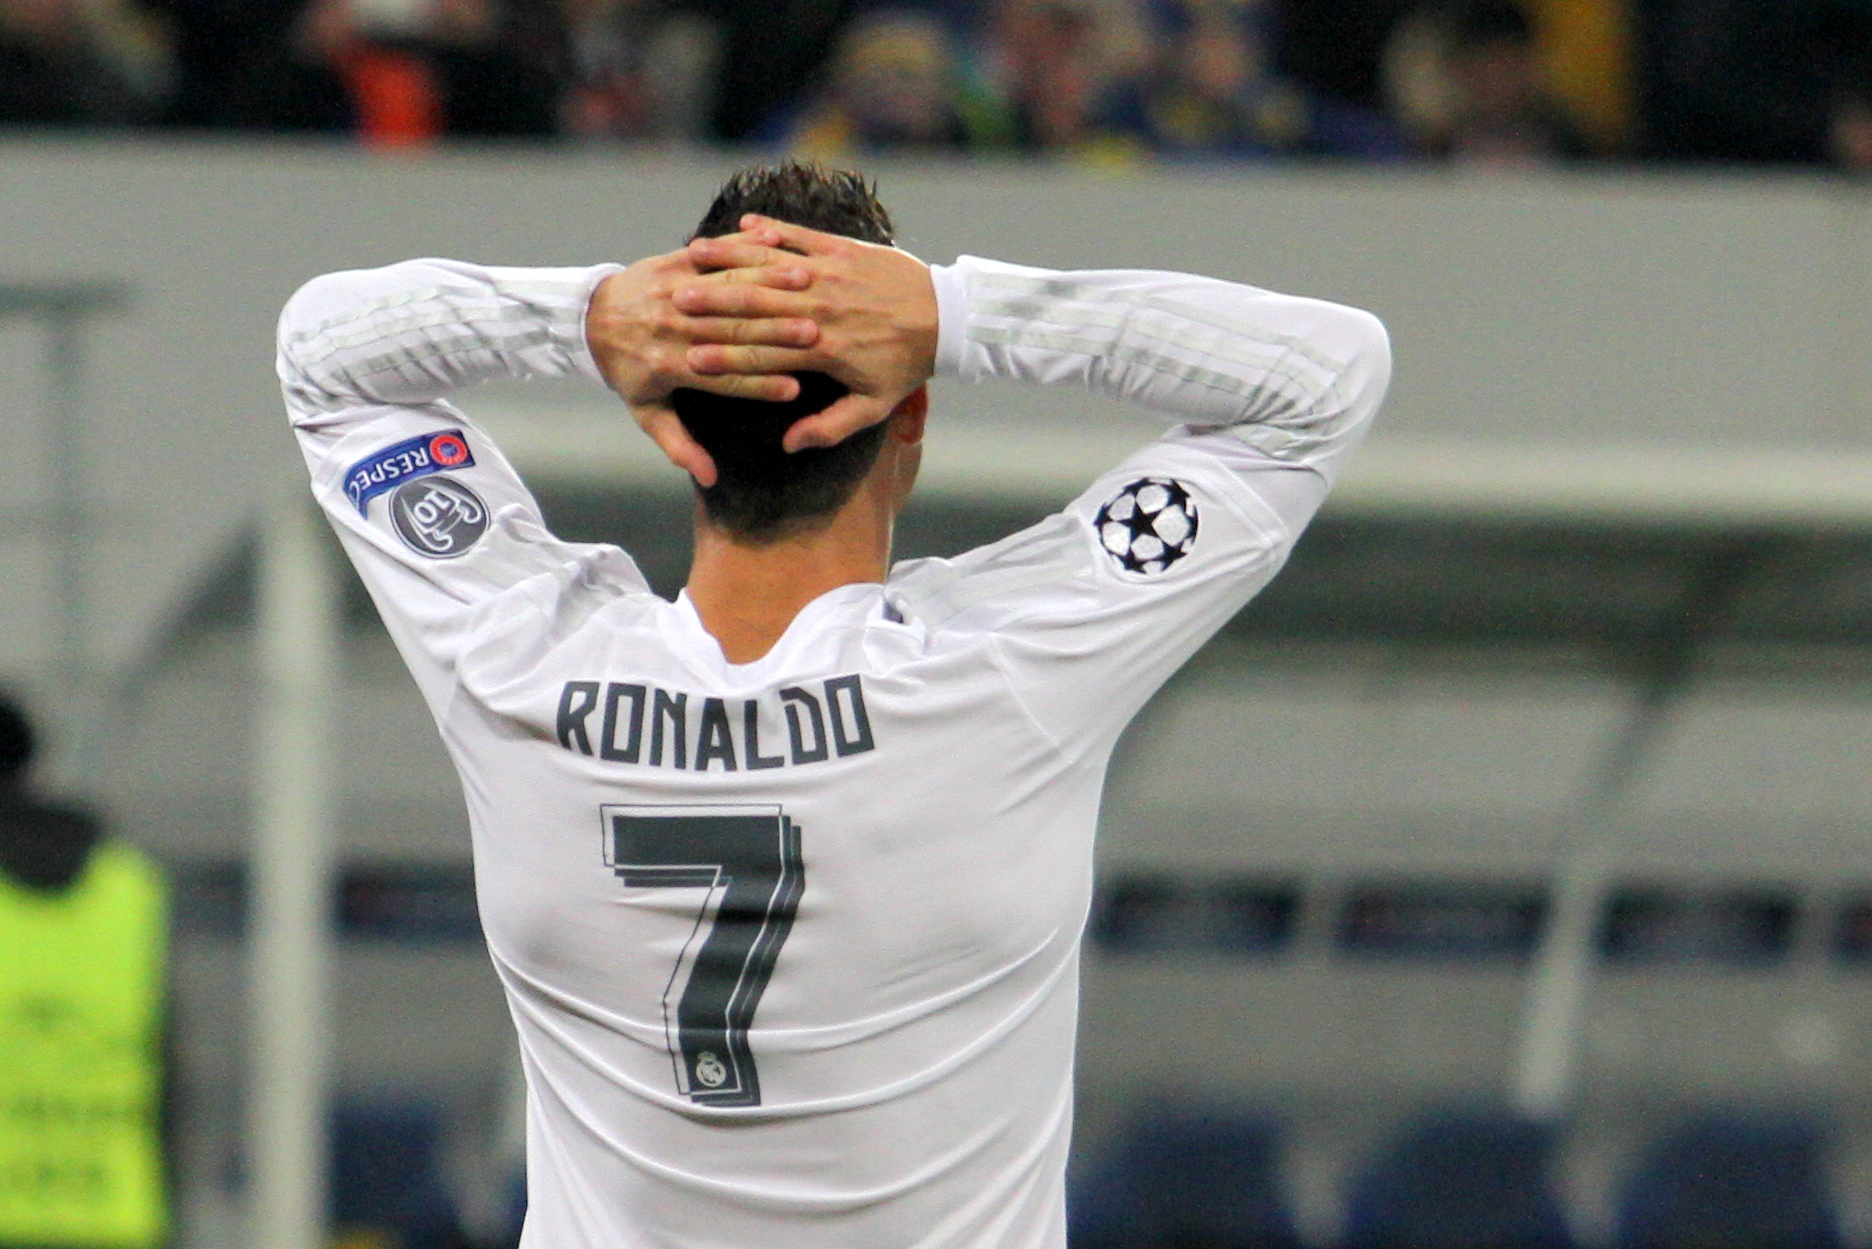 Ronaldo pálí do mladší generace: Nesnesou kritiku. Když mně bylo 18, slova starších byla svatá - Ruik